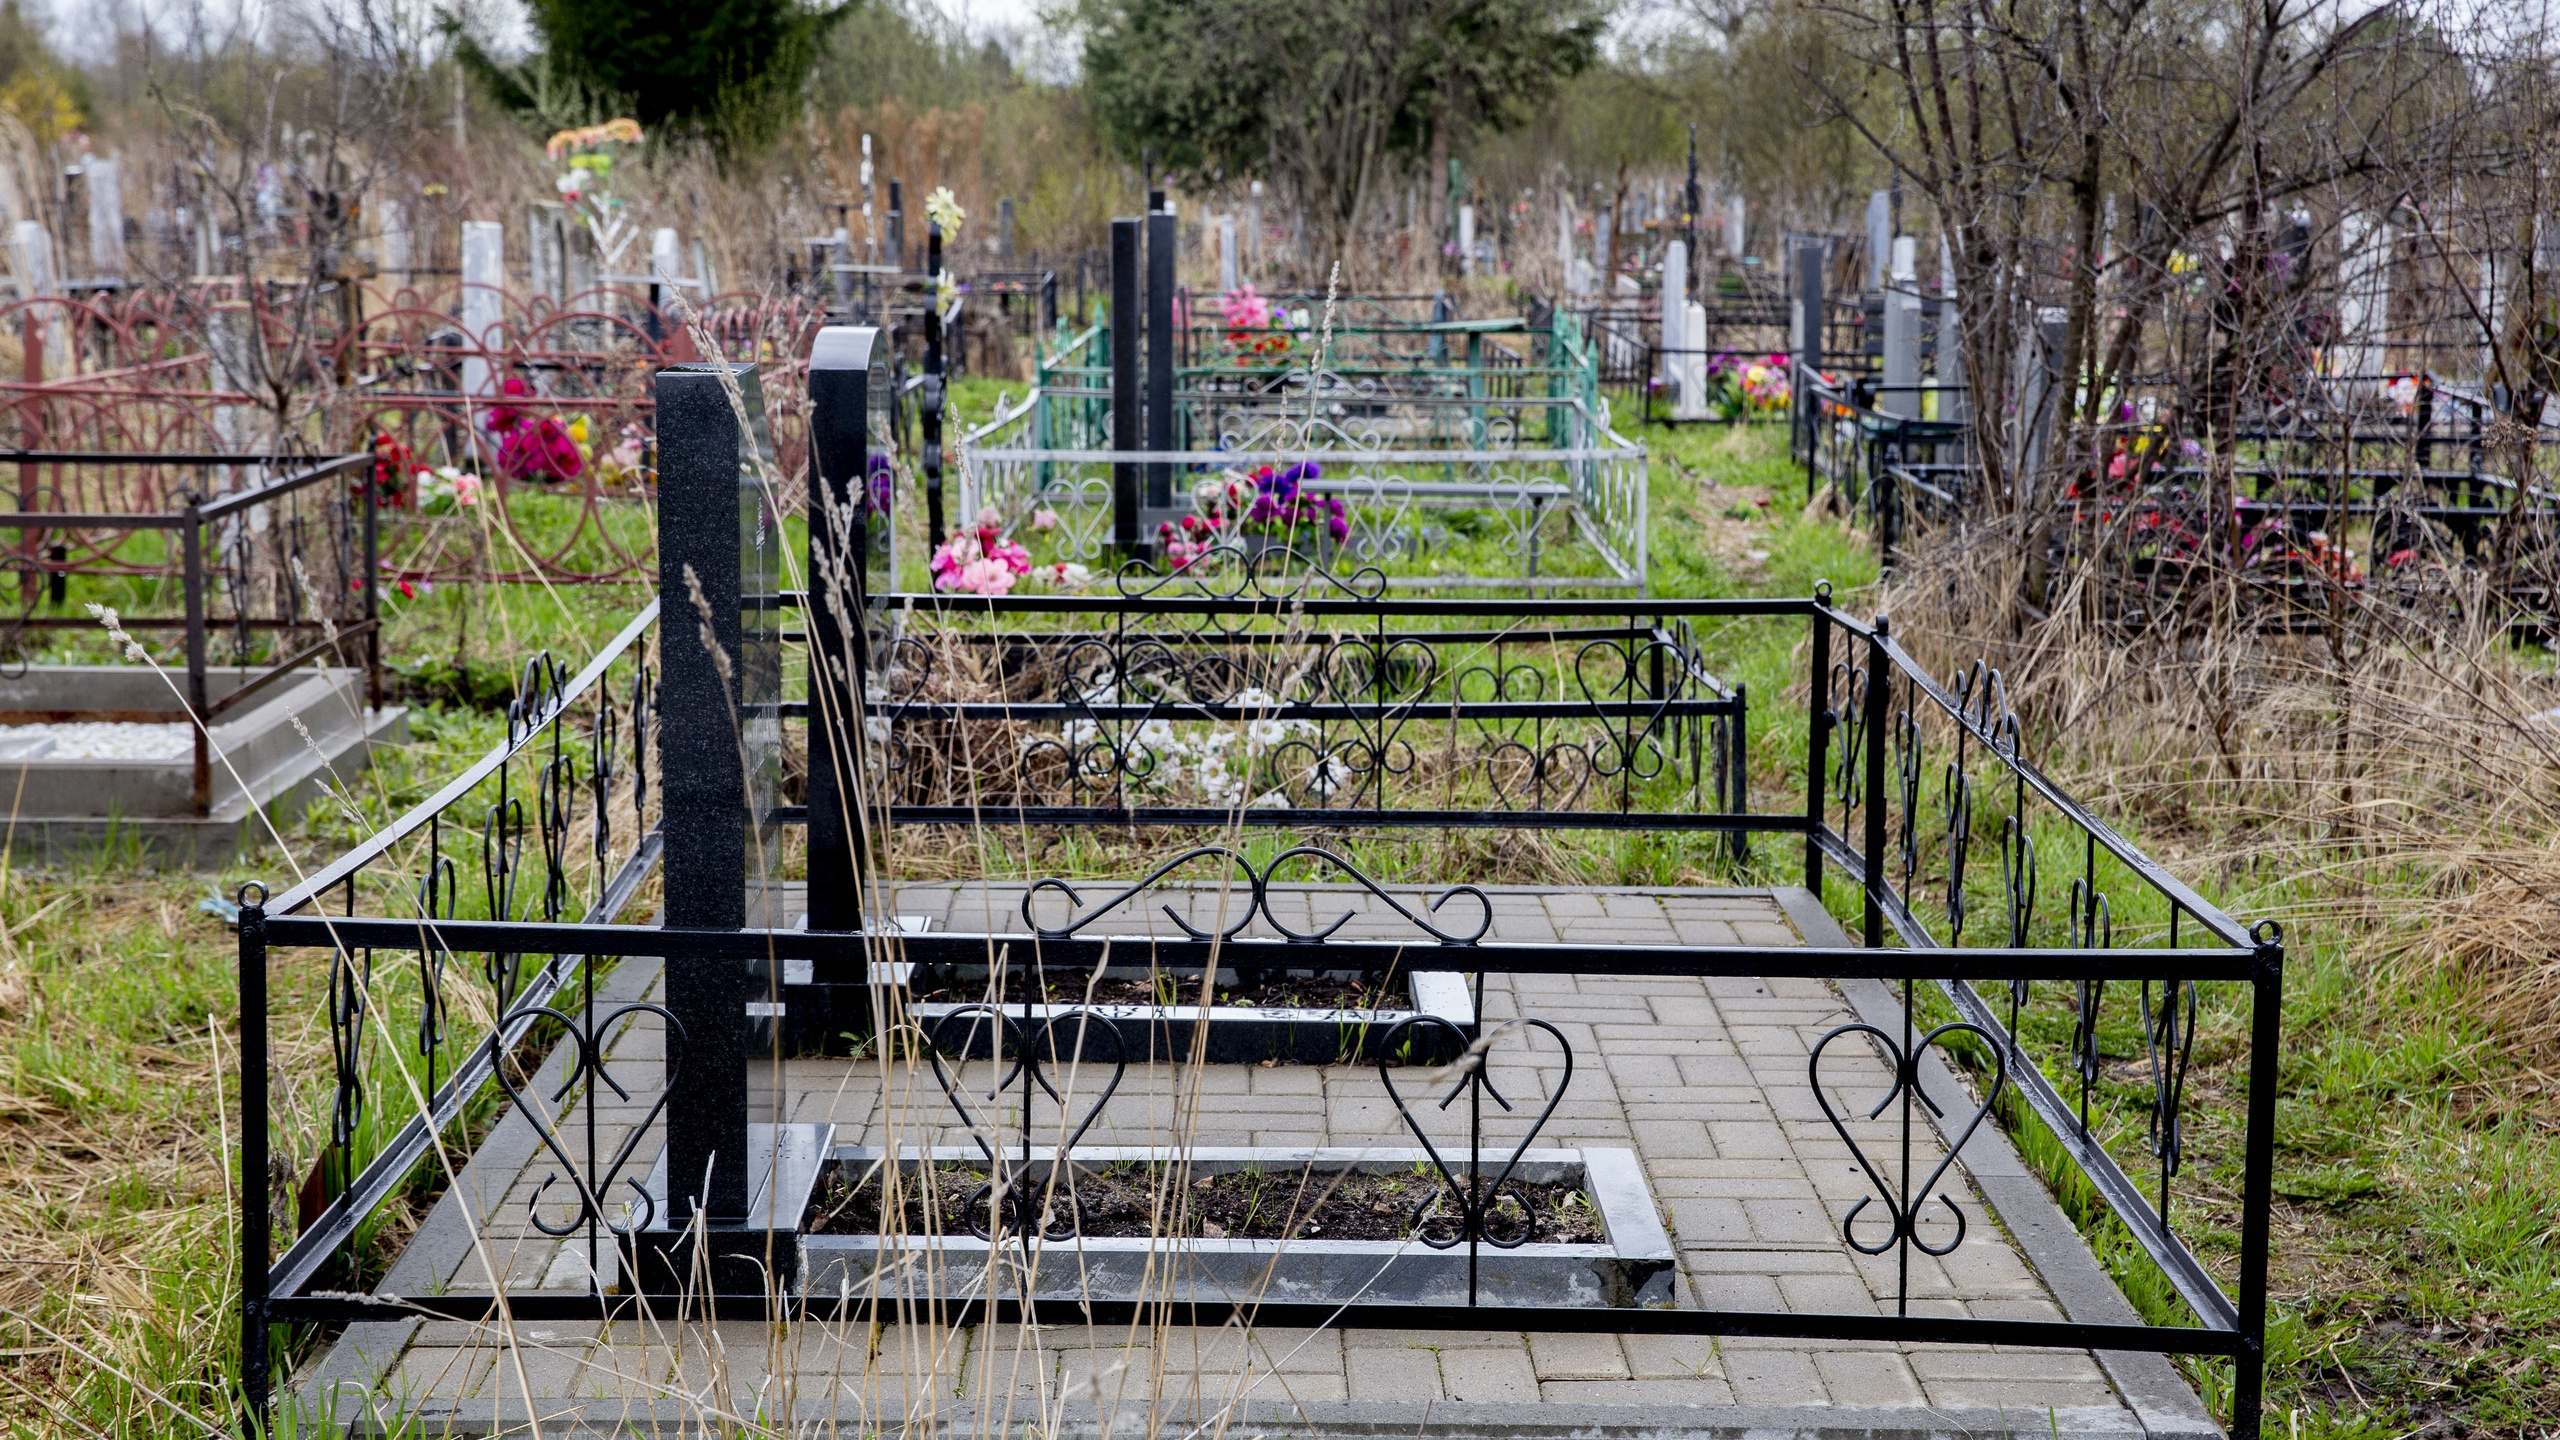 Посещают ли кладбище в воскресенье